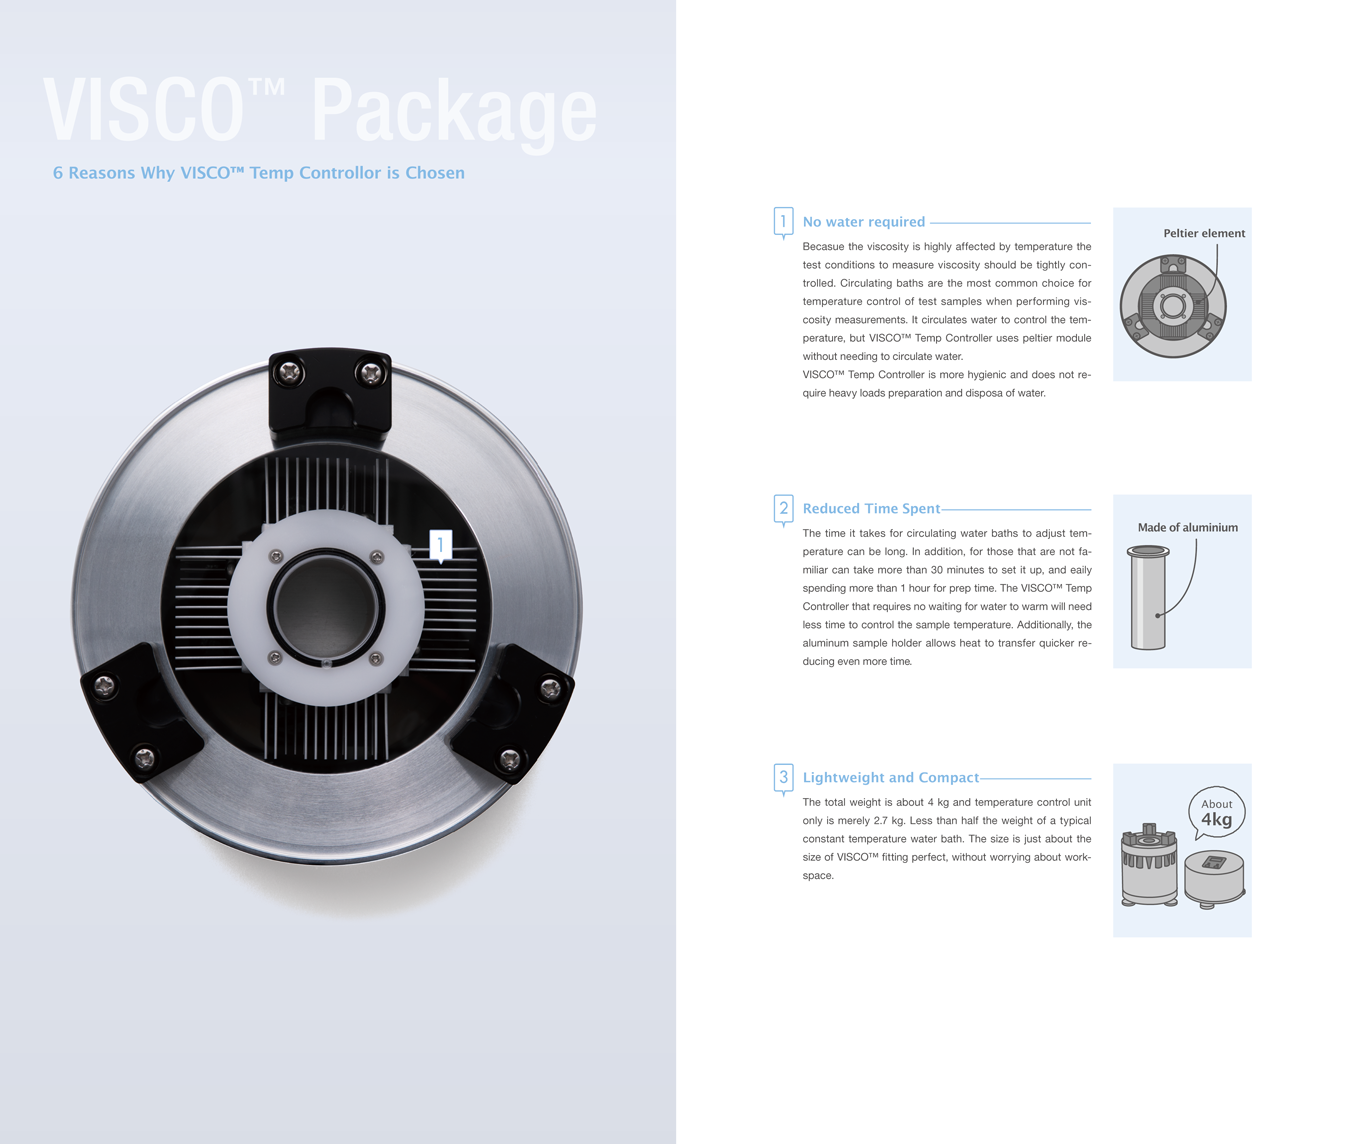 VISCO Package VISCO Temp Controller